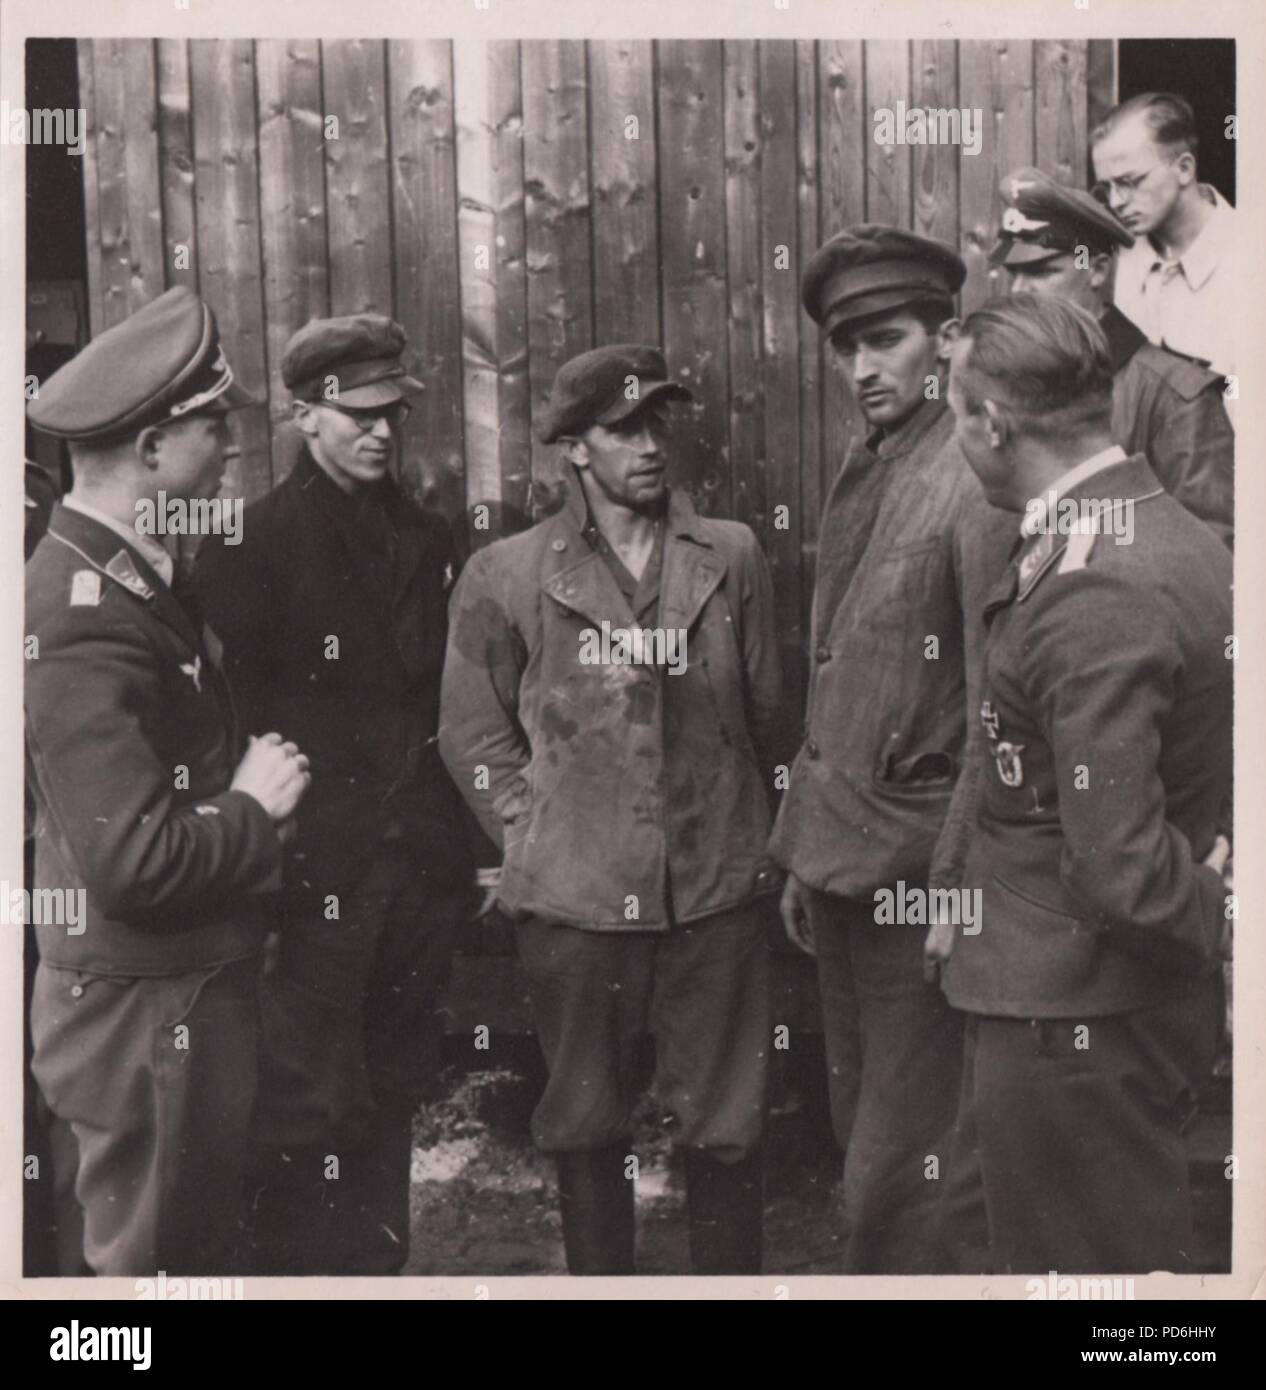 Bild aus dem Fotoalbum von Oberleutnant Oscar Müller von kampfgeschwader 1: Am 27. Juni 1941 Junkers Ju 88 A-5 V4+ auf (Werk. Nr. 4296) vom 5./KG 1, wurde gemeldet, dass sie während einer Mission in Riga verloren. Unteroffizier Friedrich Leibold (Air Gunner) in Aktion getötet wurde, aber der Rest der Crew, Pilot Oberfeldwebel August Wiese (Mitte), Beobachter Feldwebel Martin Beschleunigen (rechts) und Radio Operator Unteroffizier Armin Wuigk (mit Brille), in acht Tagen zurückgegeben. Hier die Crew sind noch in ziviler Kleidung verkleidet und im Gespräch mit Offizieren der Luftwaffe. Stockfoto